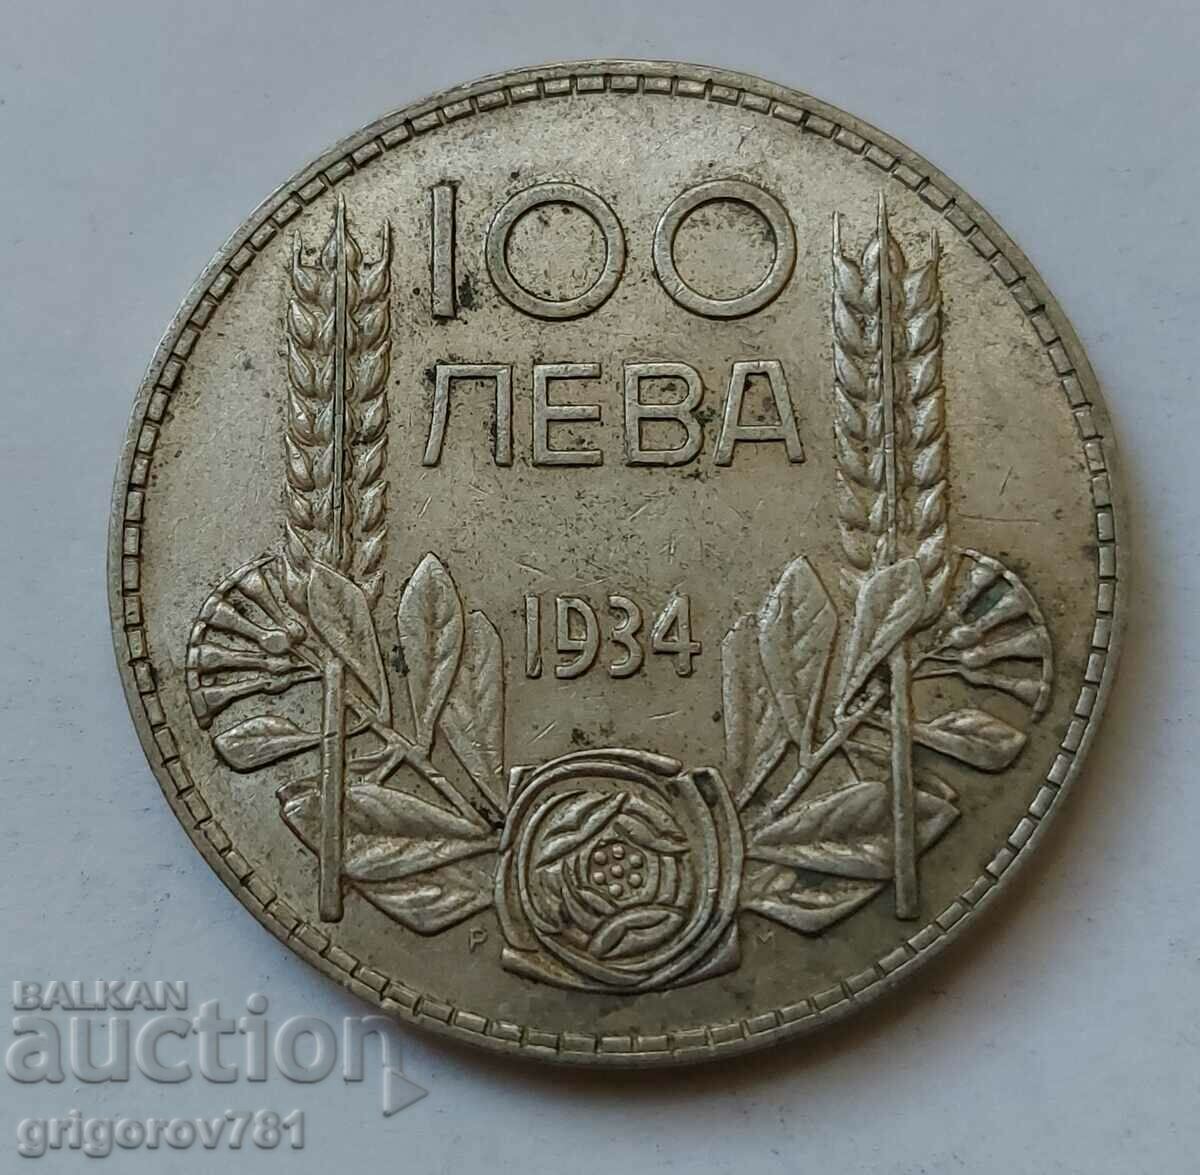 Ασήμι 100 λέβα Βουλγαρία 1934 - ασημένιο νόμισμα #121